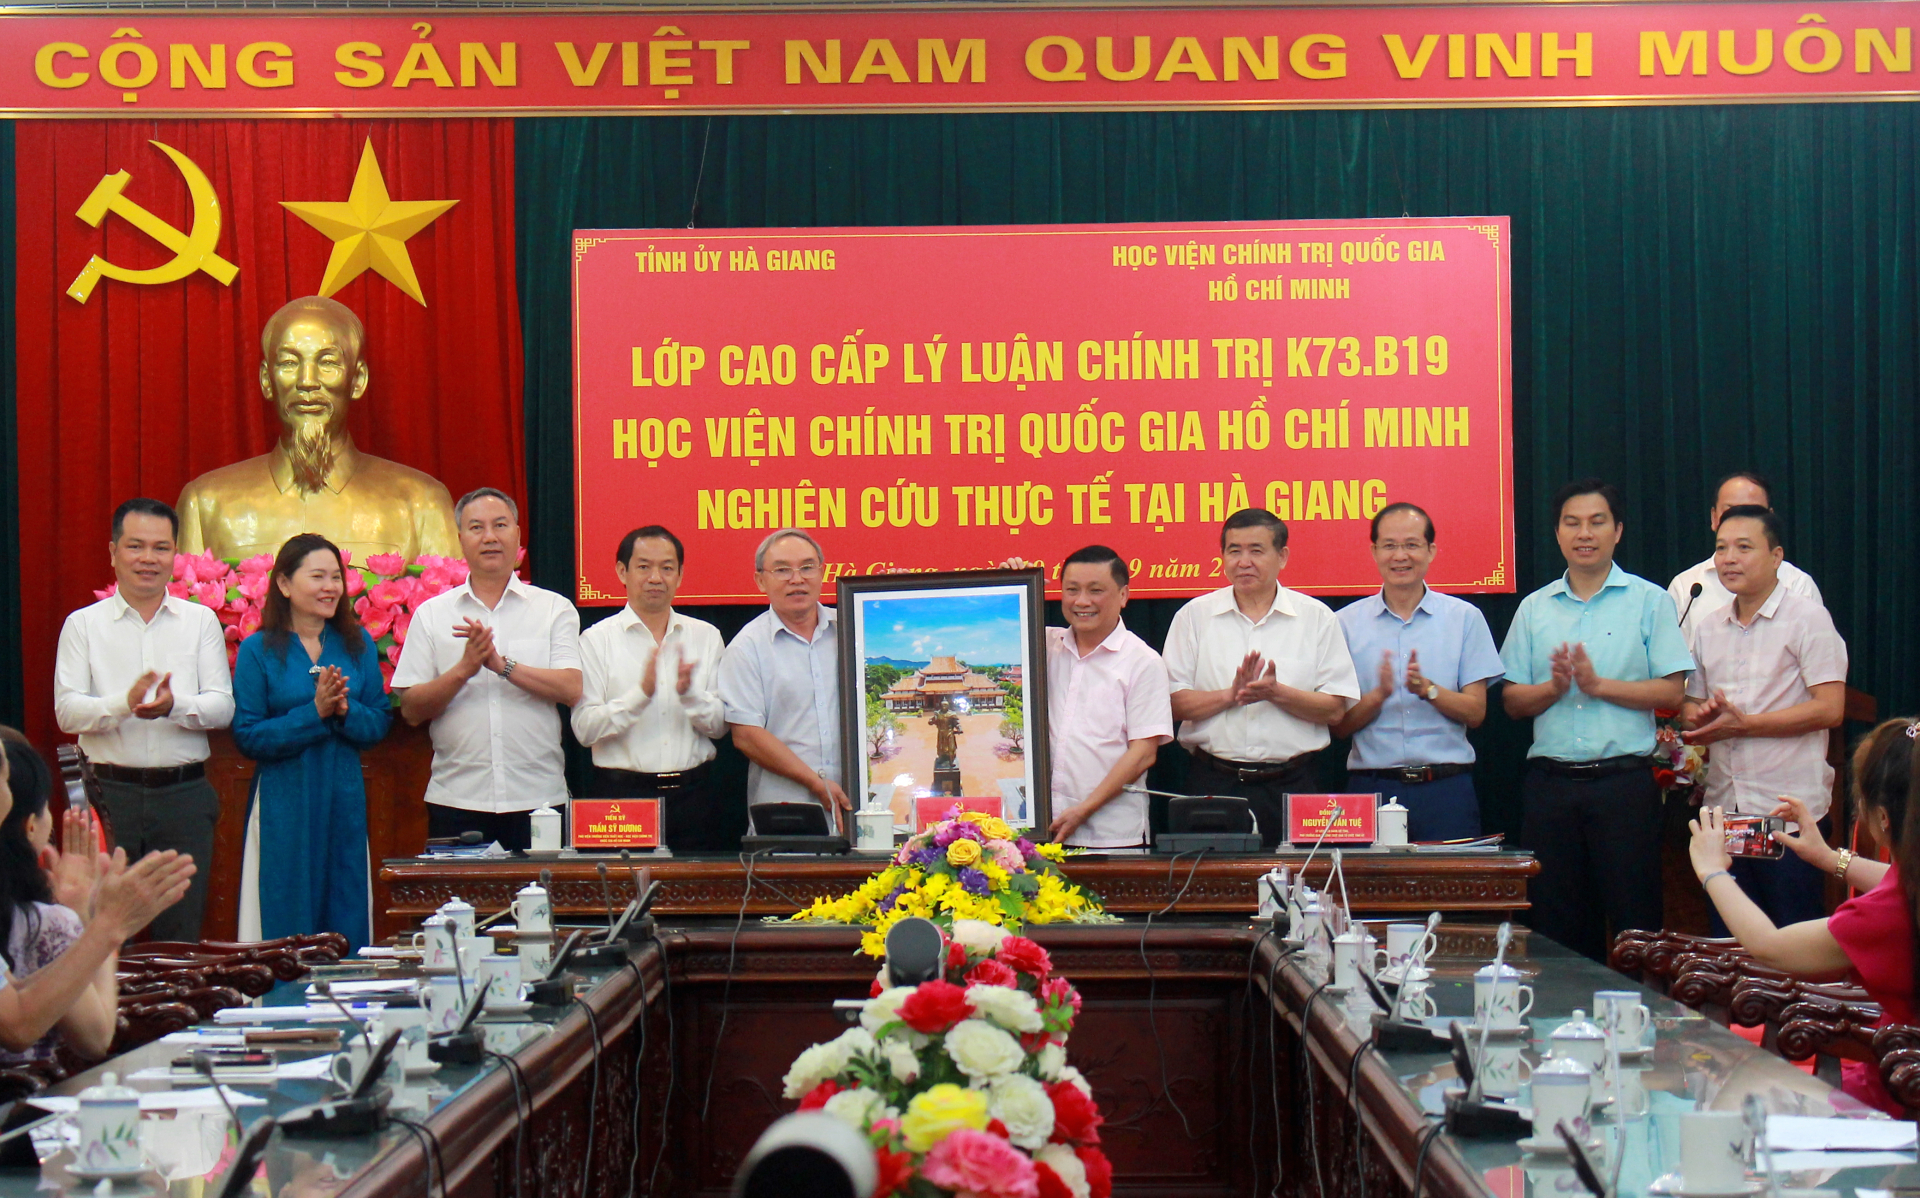 Đoàn công tác tặng bức tranh lưu niệm cho tỉnh Hà Giang